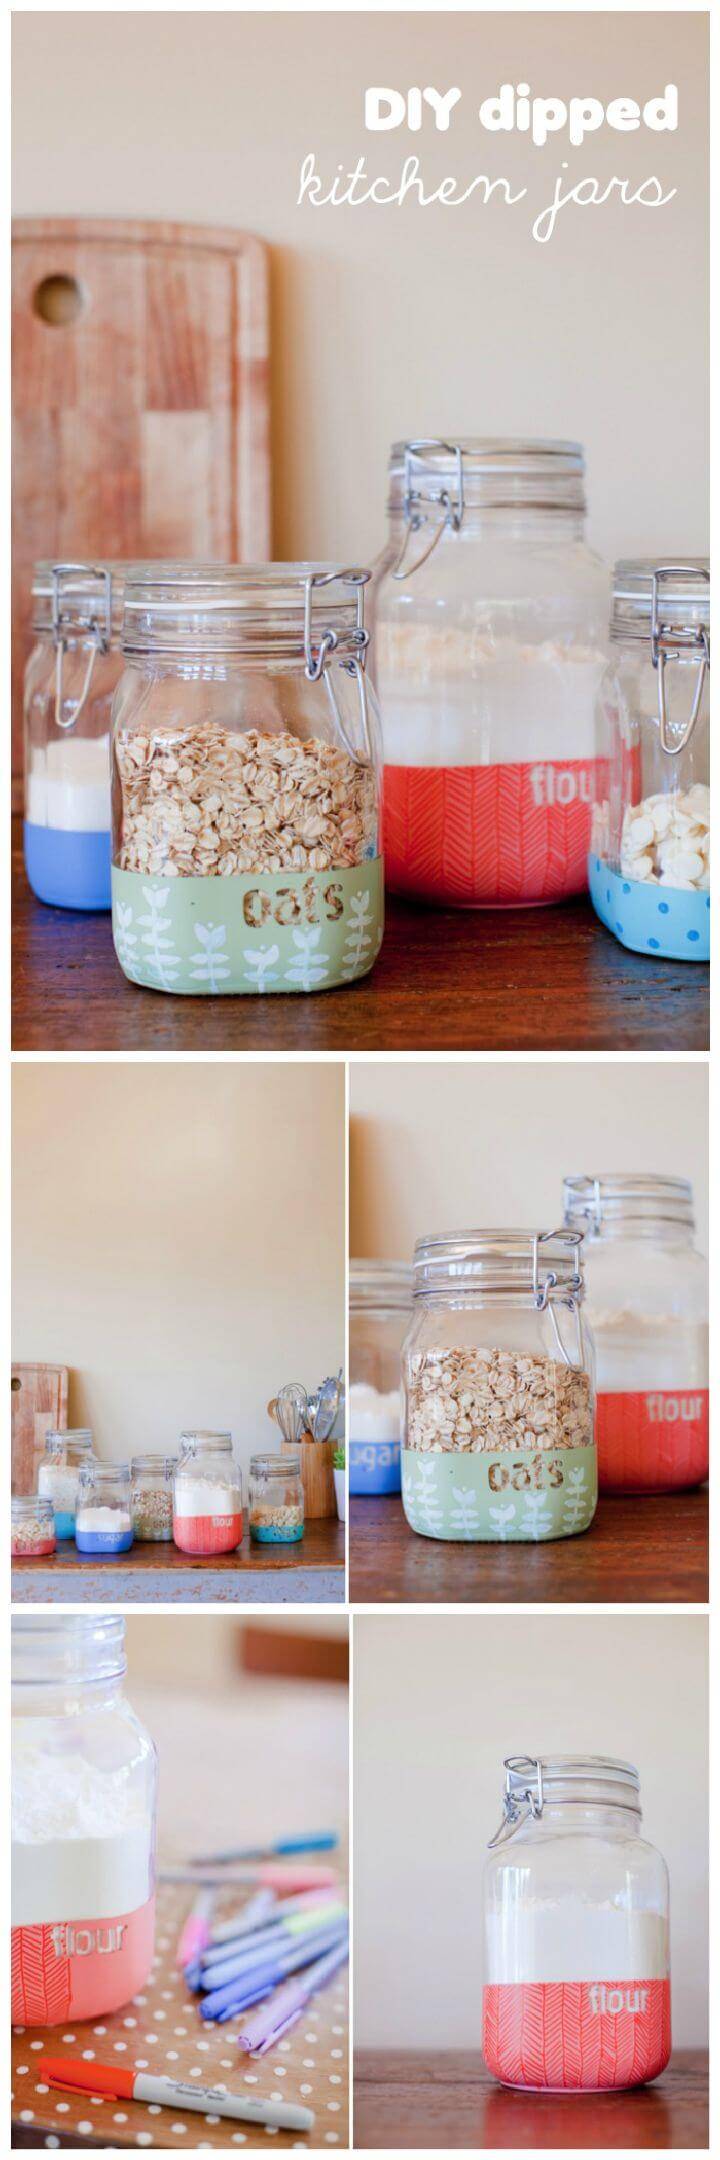 DIY dipped kitchen jars